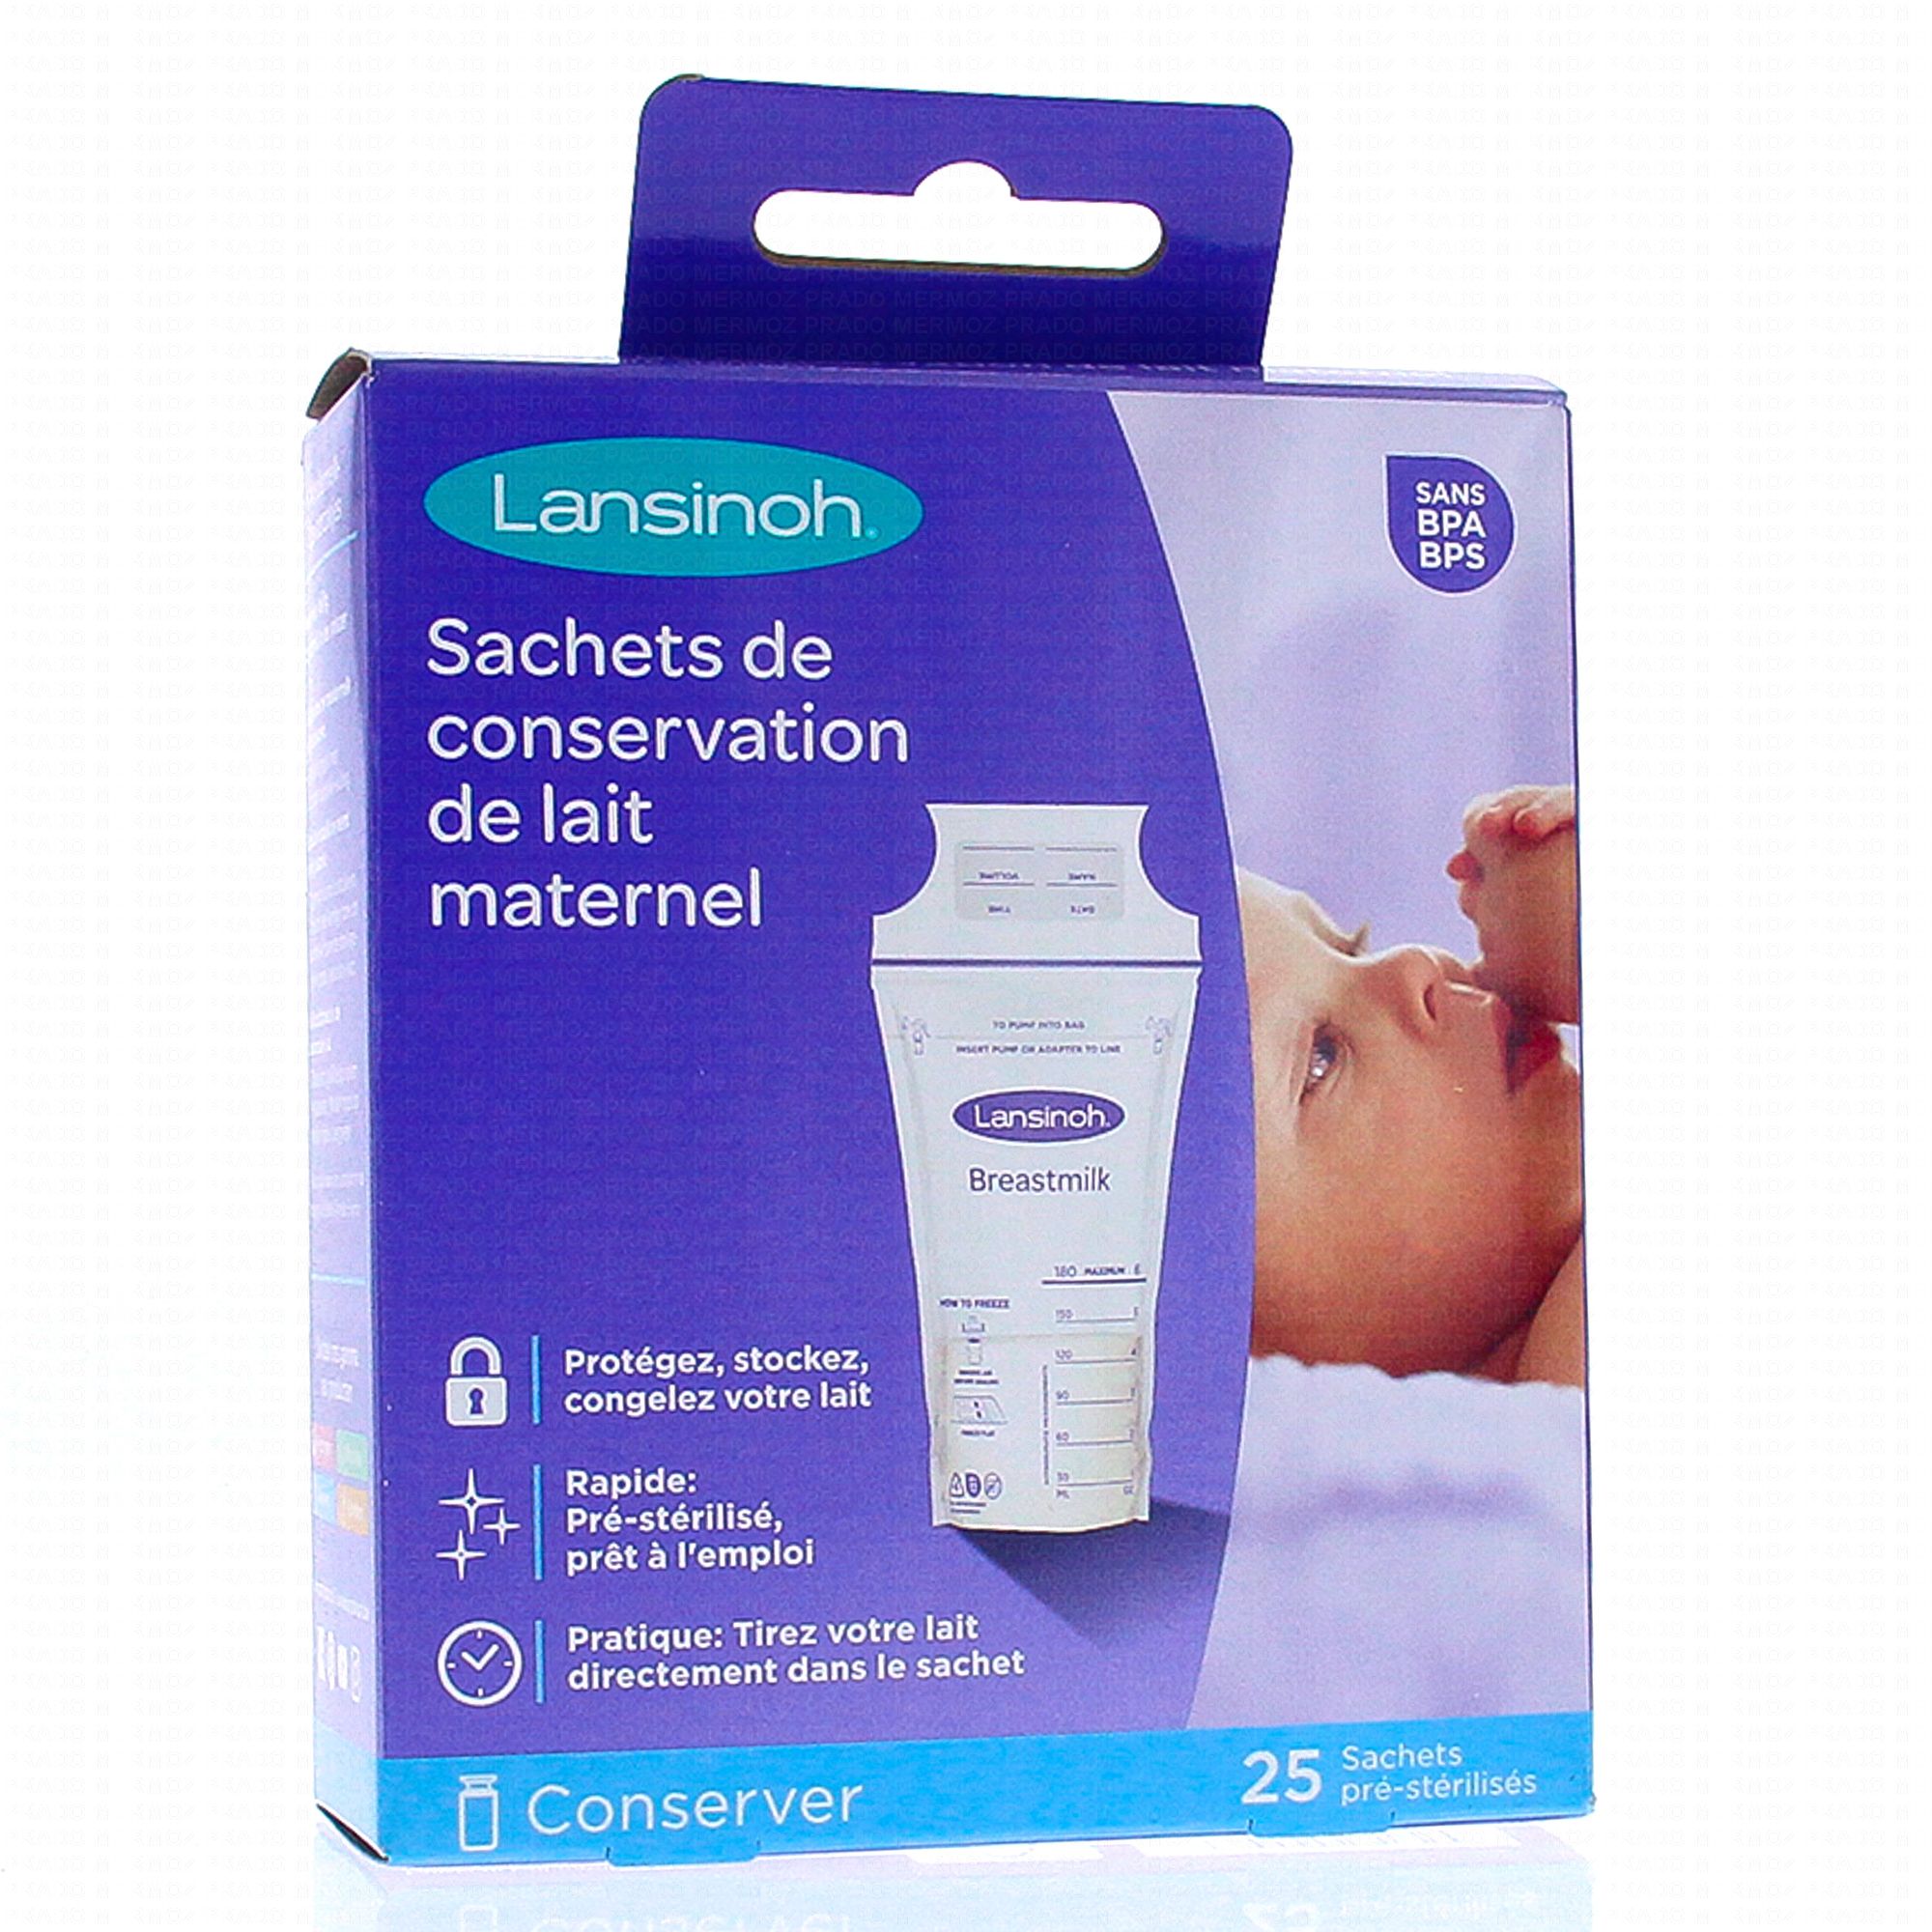 LANSINOH Sachets de conservation de lait maternel 25 sachets -  Parapharmacie Prado Mermoz